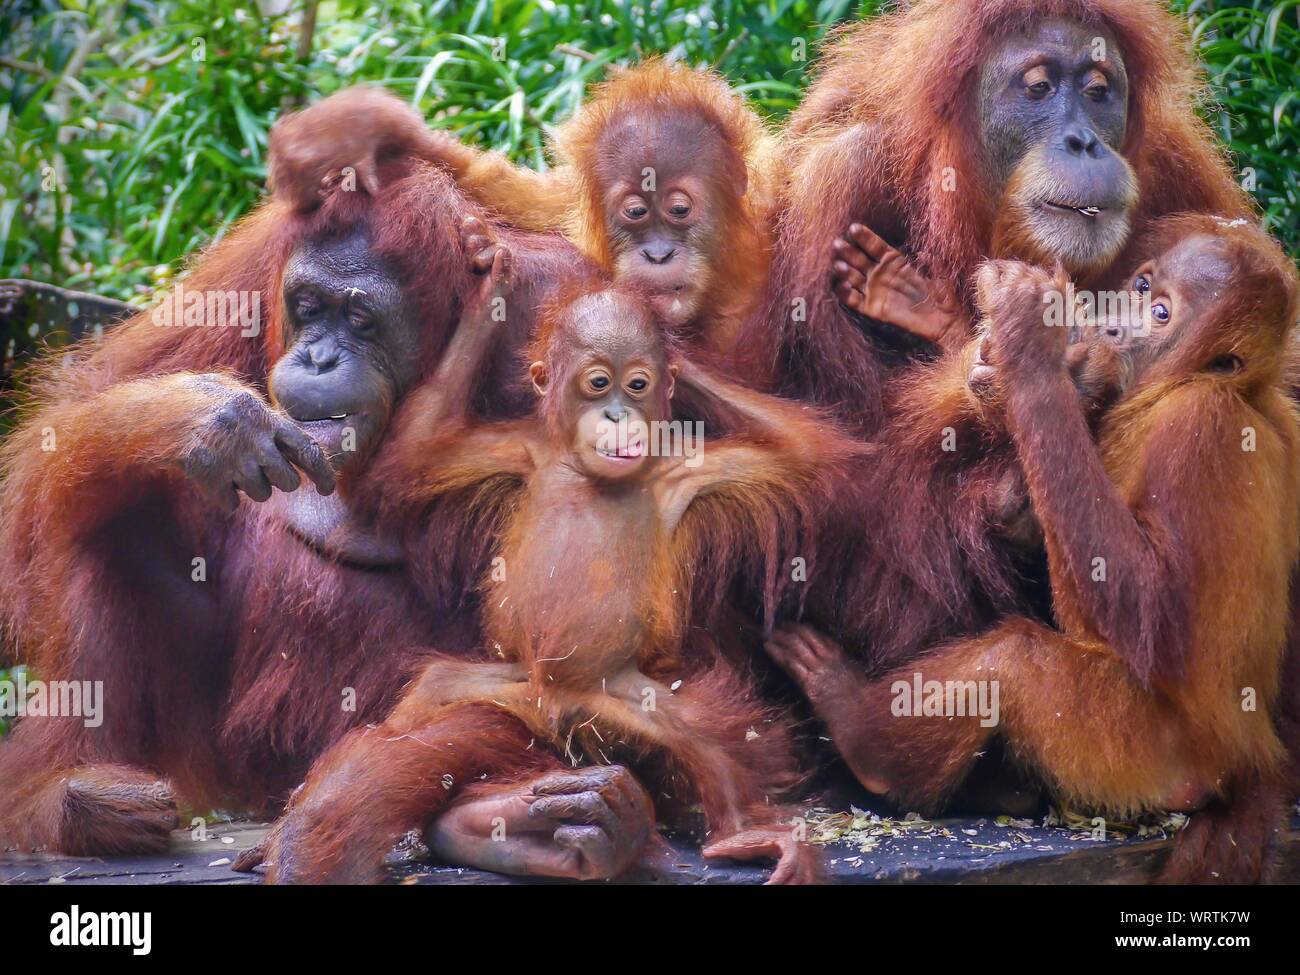 Lustige Porträt einer Gruppe von Orang-utans, darunter zwei Mütter mit ihren Jungen nachkommen, genießen Sie einen Imbiss mit Sonnenblumenkernen. Stockfoto